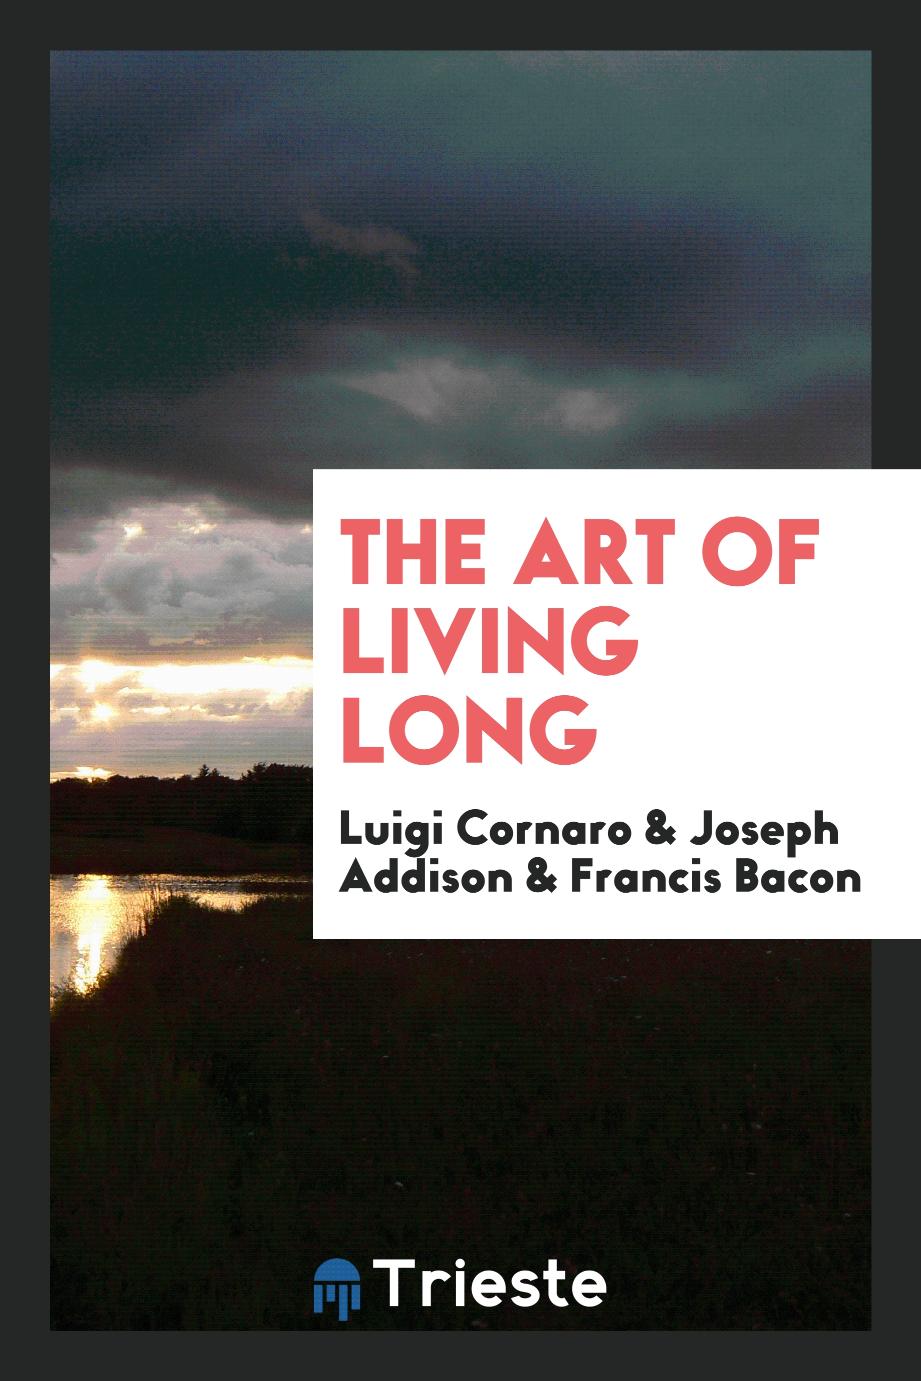 The Art of Living Long